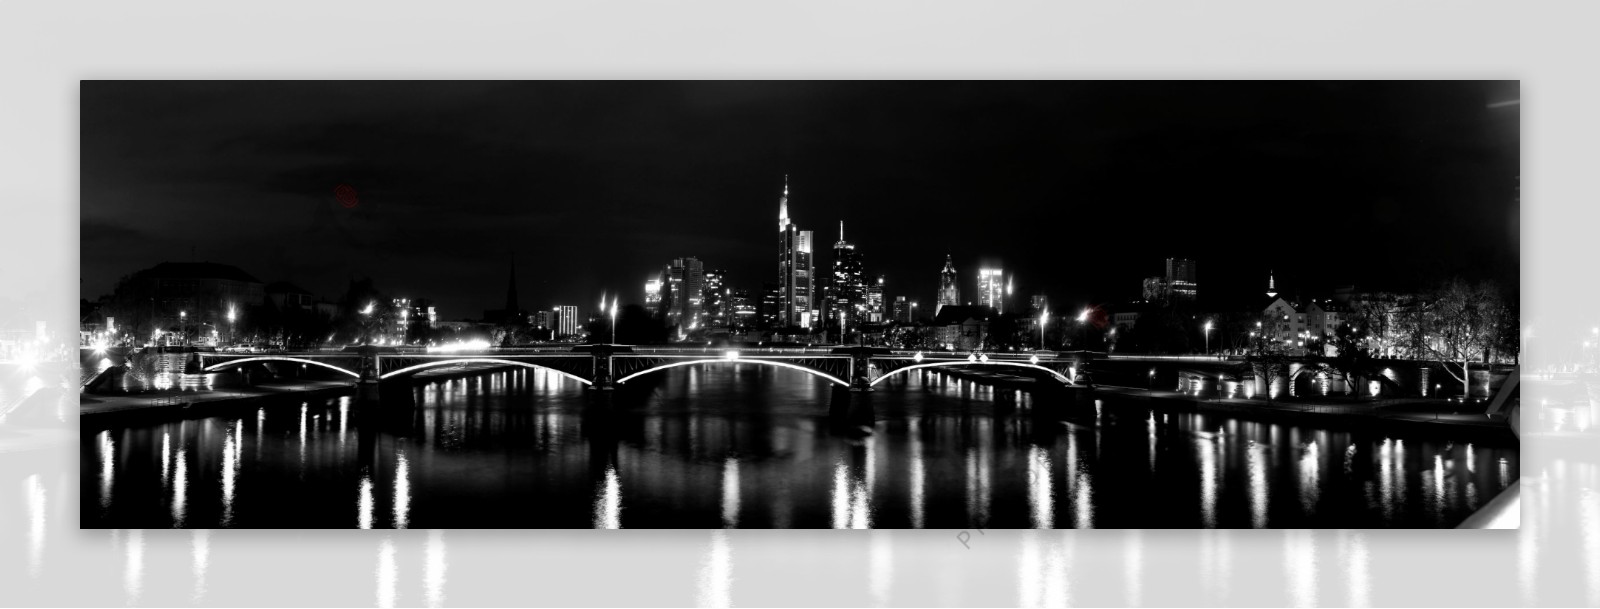 城市夜景黑白照片图片